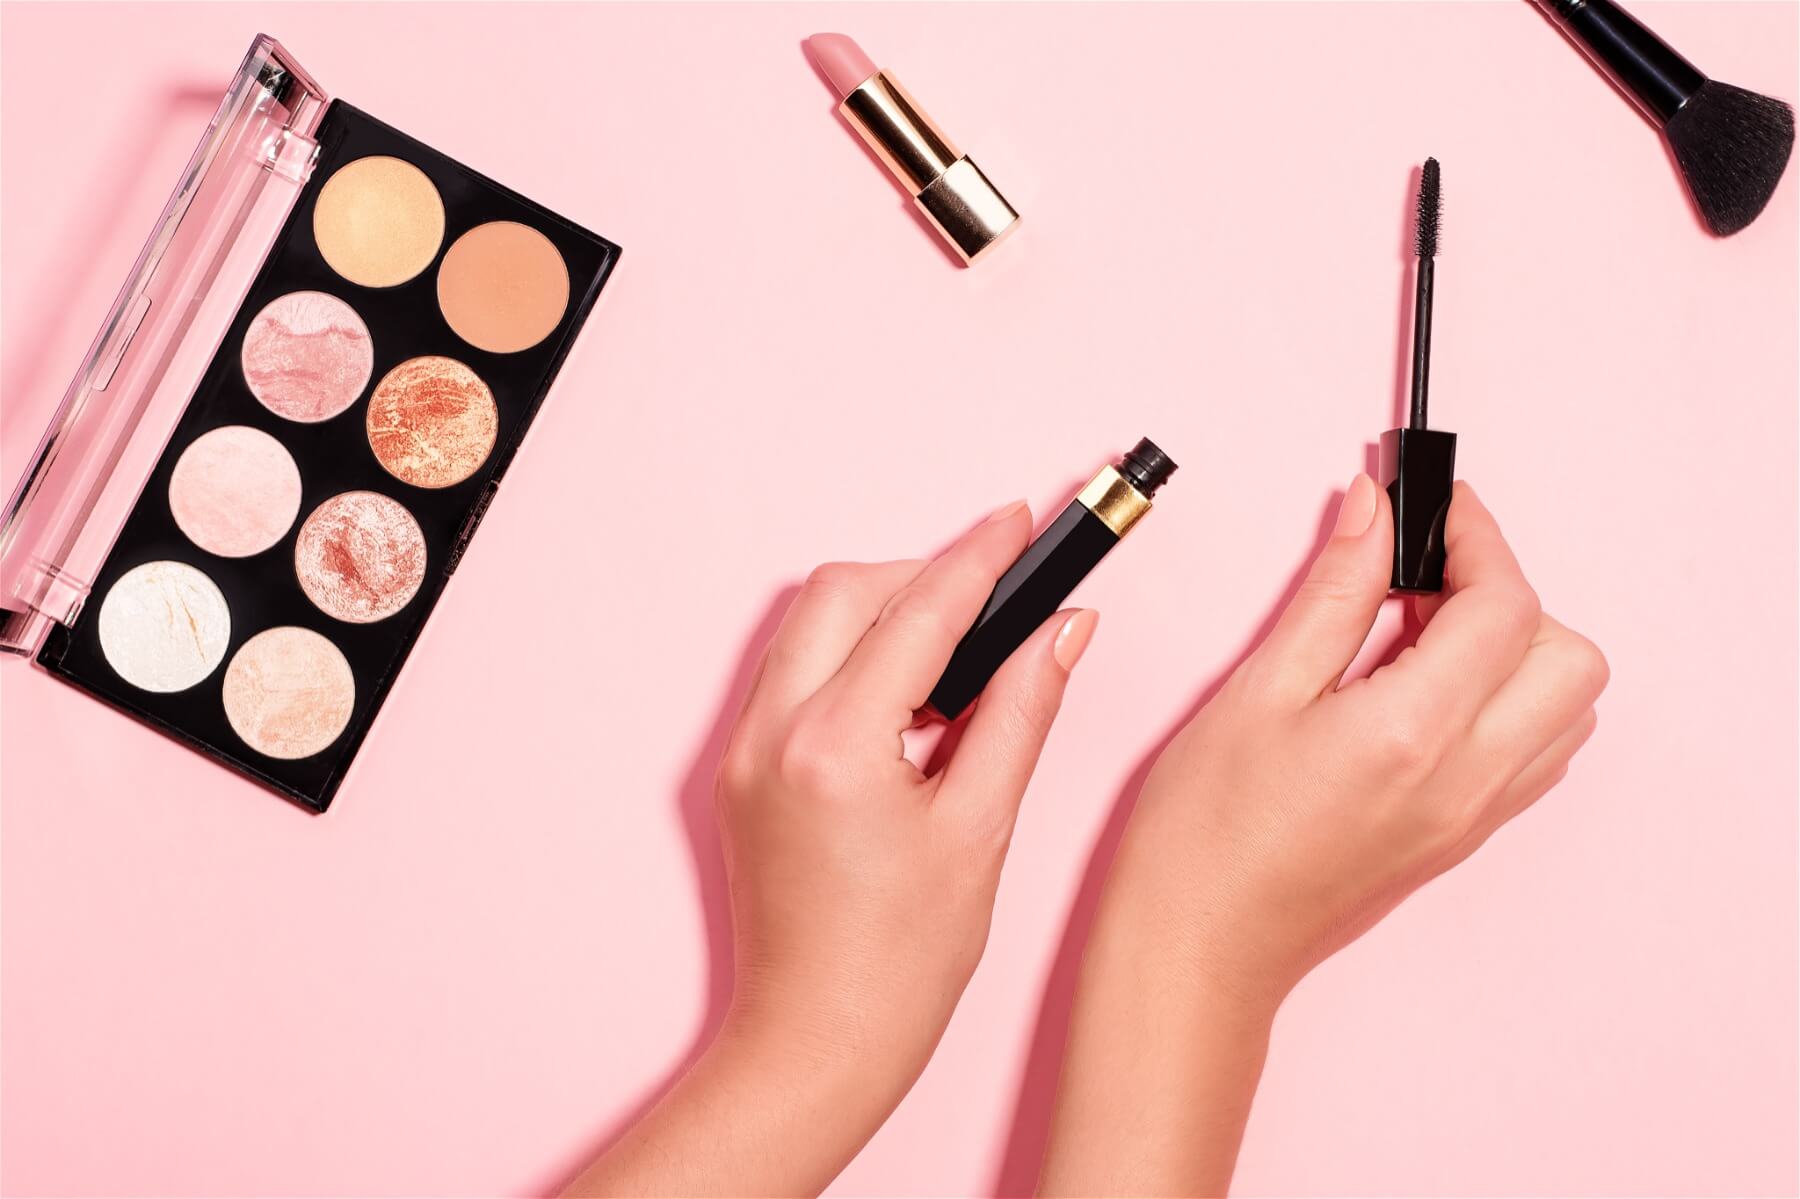 Tub wet levenslang Met deze dagelijkse make-up routine start jij iedere dag fabulous! ⋆ Femmes